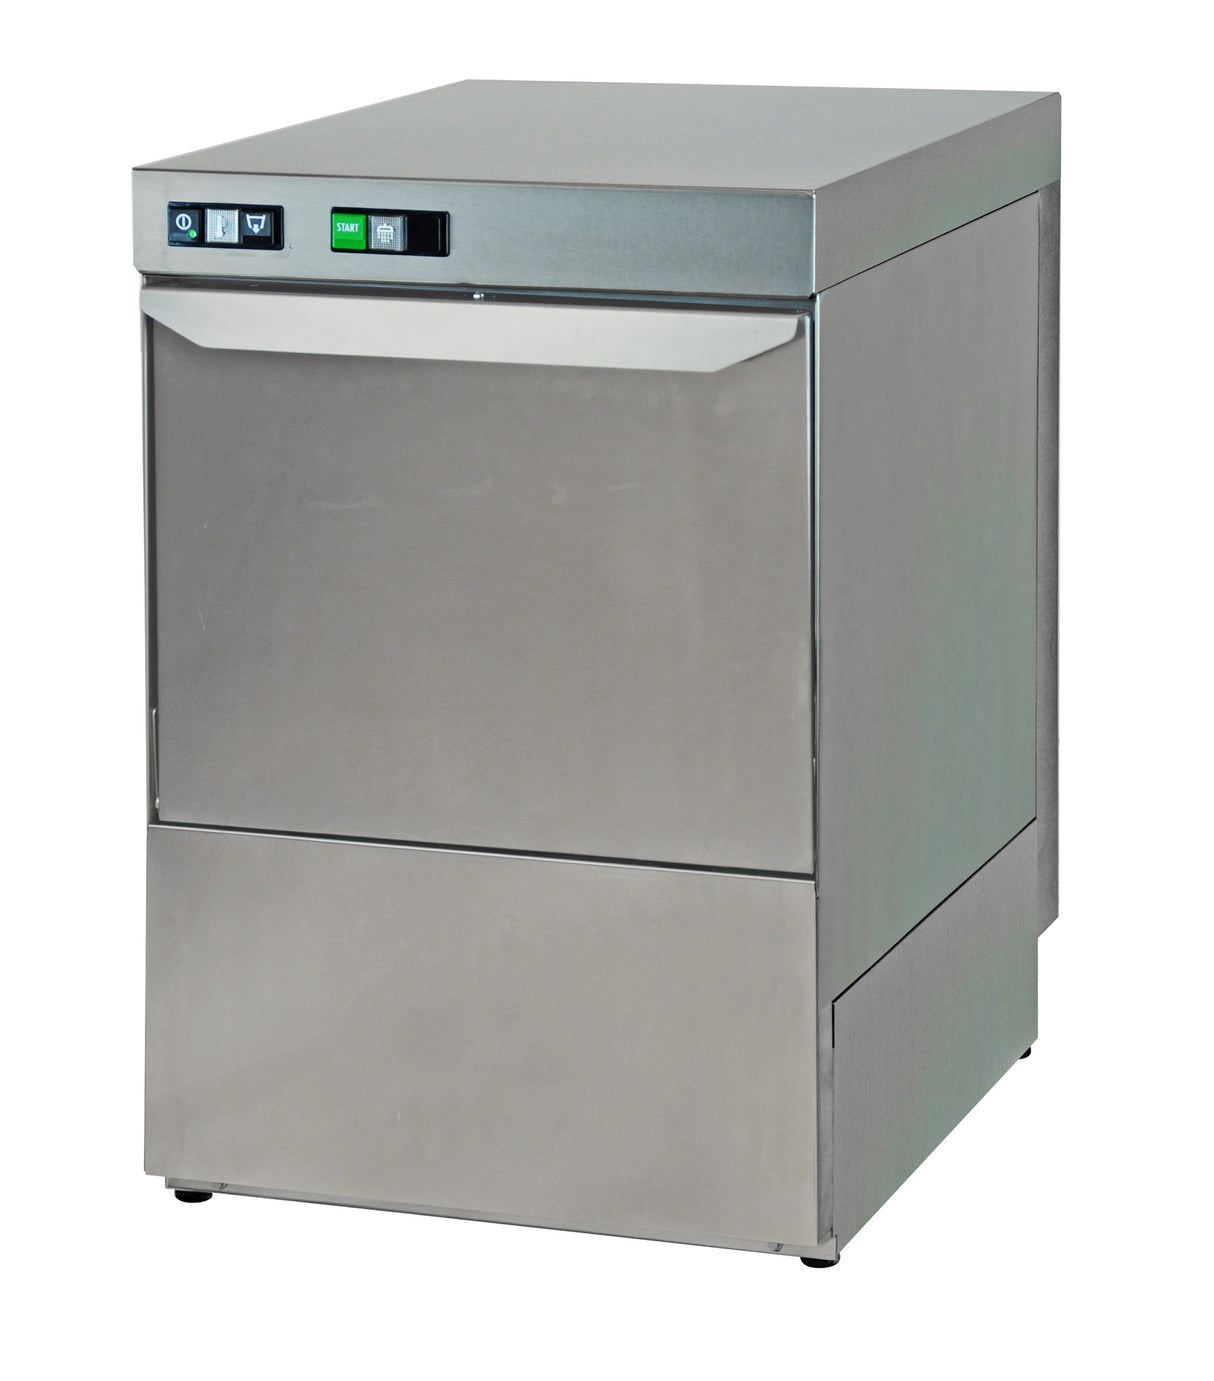 Combisteel SL Dishwasher Frontloader 500-230 Dp With Drain Pump - 7280.0021 Dishwashers Combisteel   